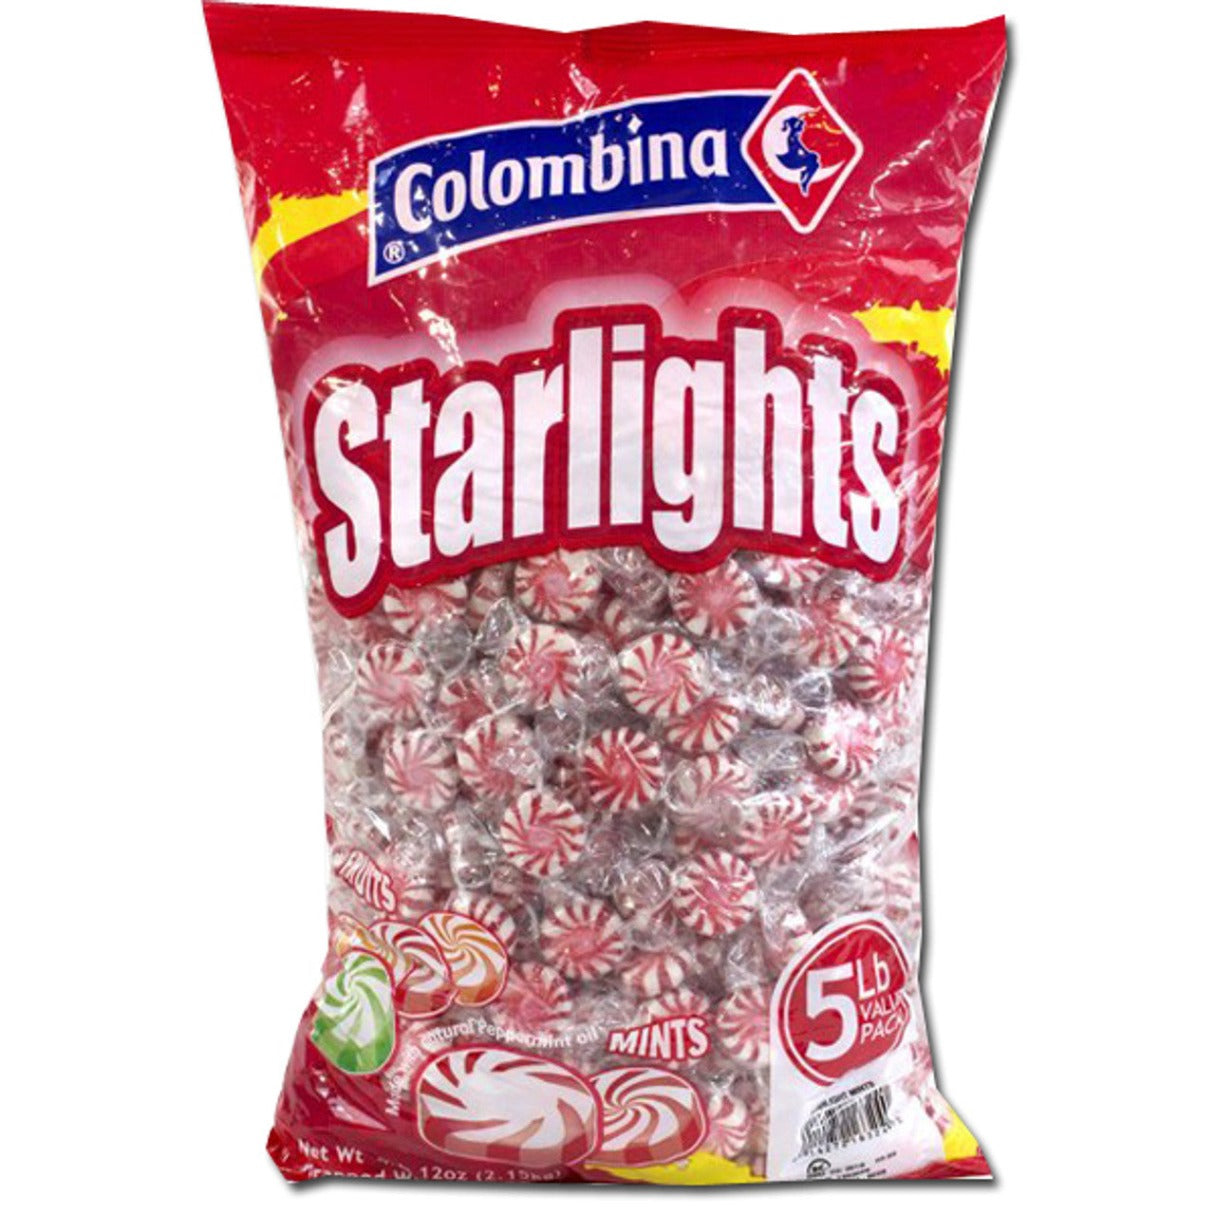 Starlight Mints Bag - 5lb